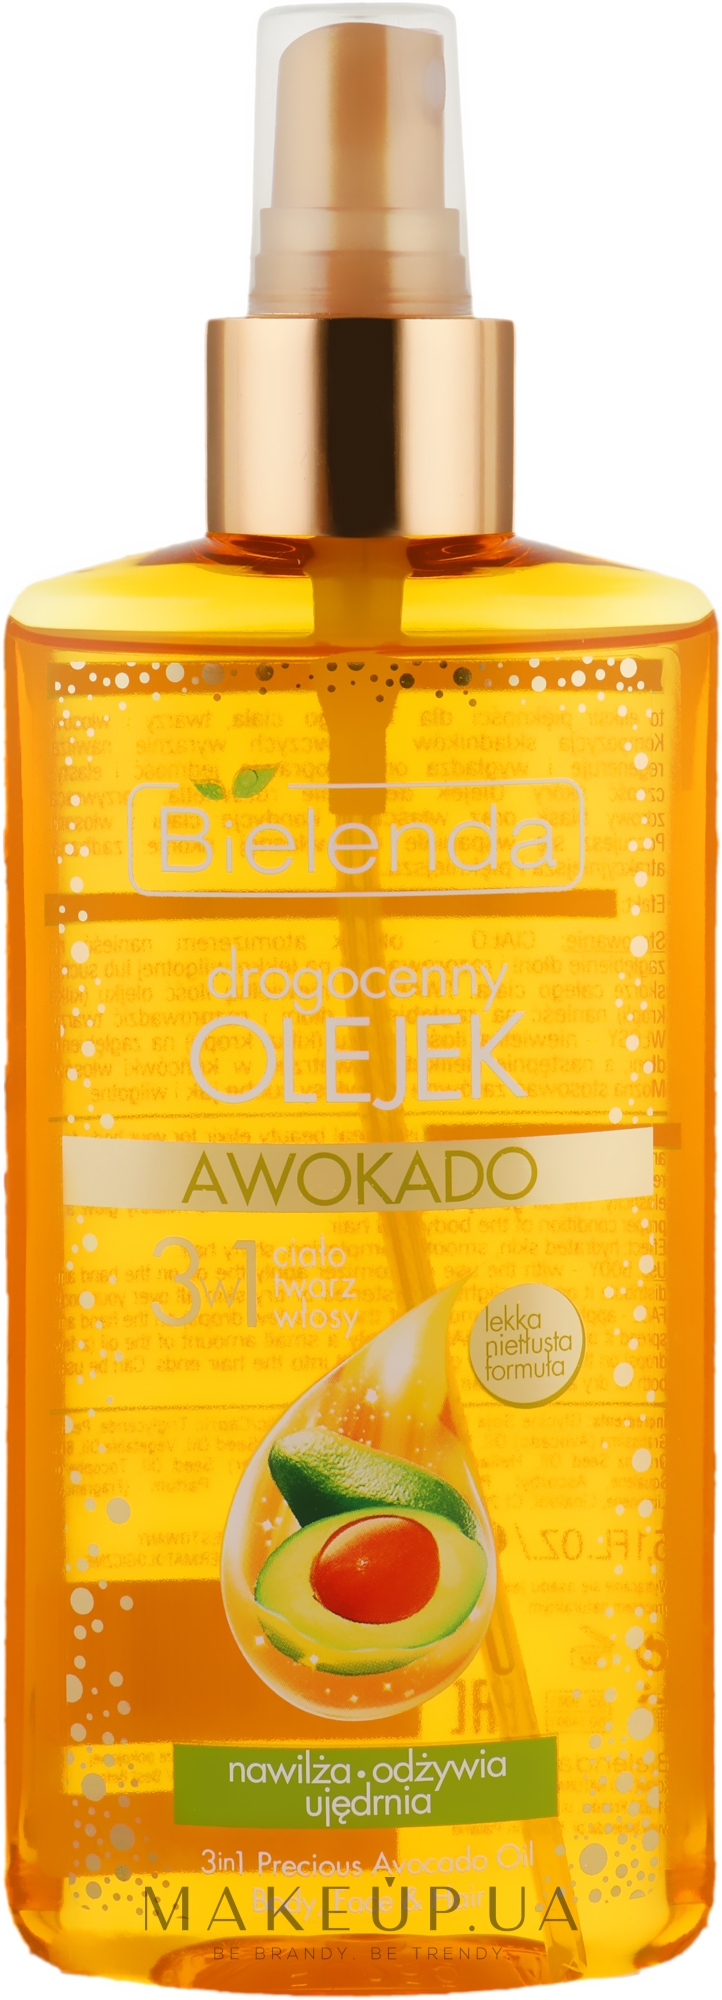 Масло авокадо 3 в 1 для тіла, обличчя та волосся - Bіelenda Drogocenny Olejek  — фото 150ml